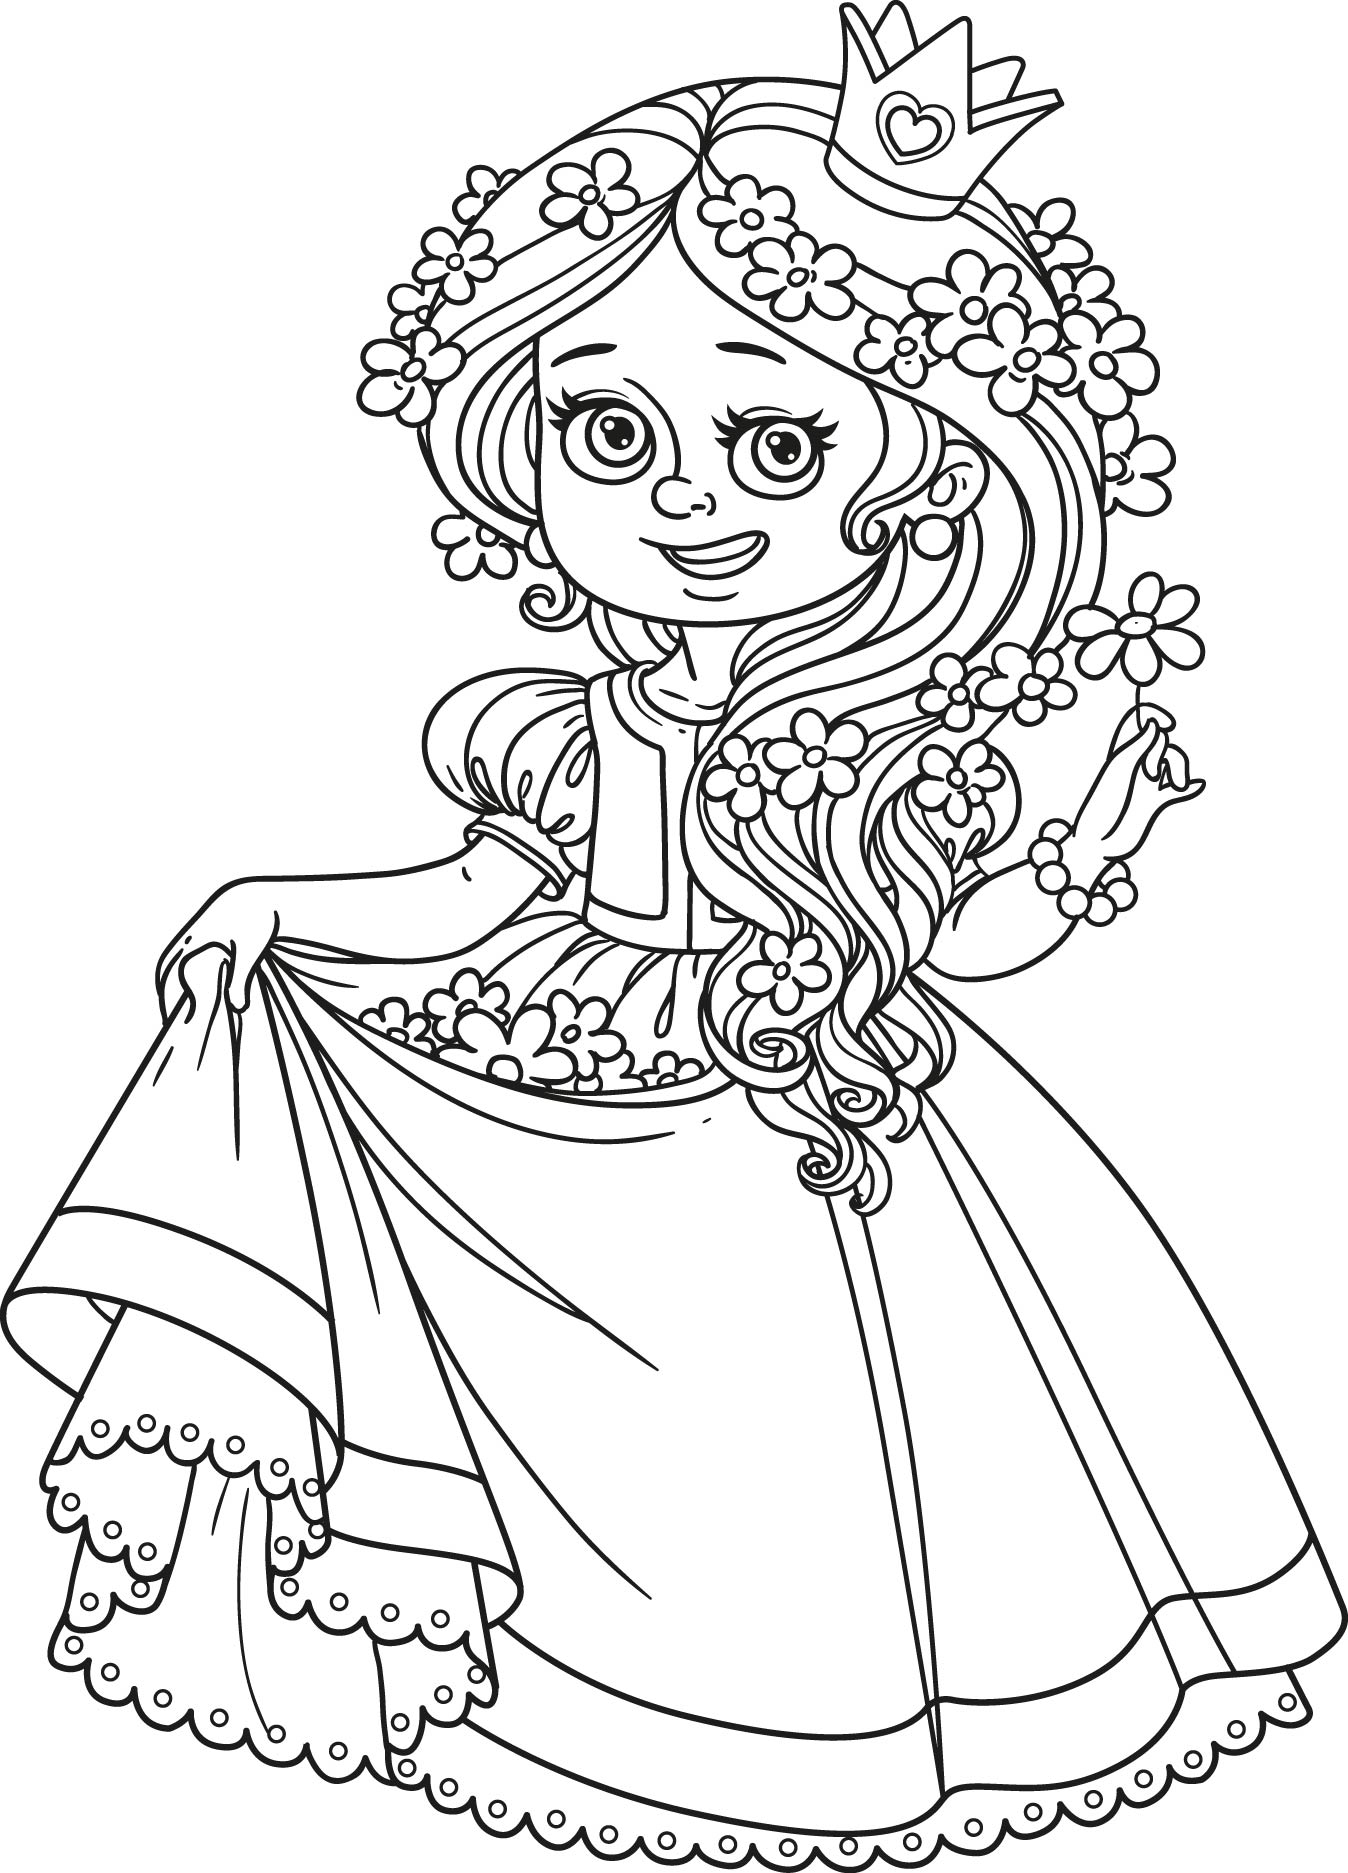 Раскраска цветочная принцесса формата А4 в высоком качестве